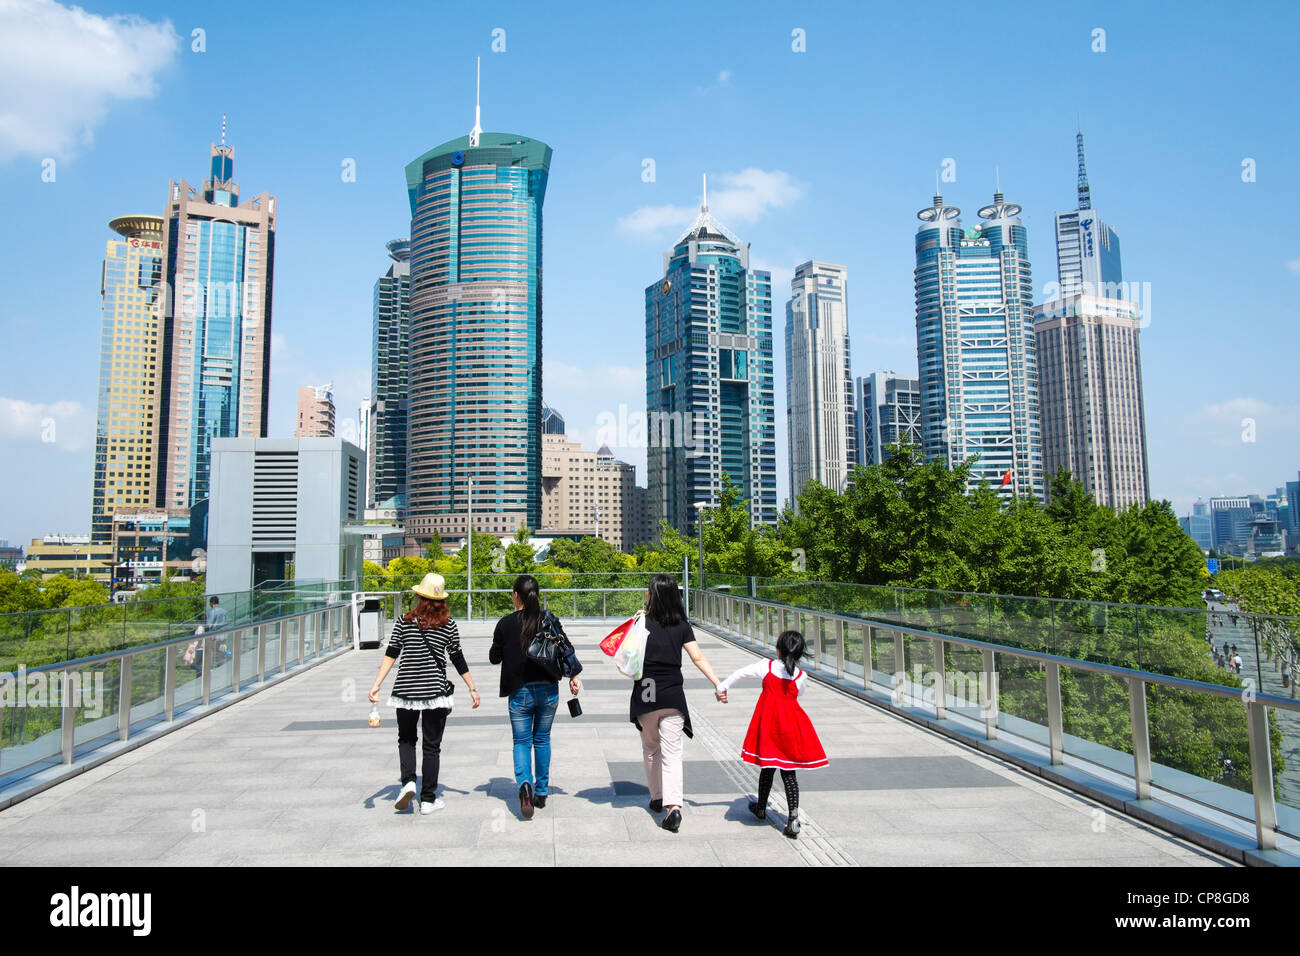 La gente caminando en pasarela con horizonte de rascacielos en el distrito de Lujiazui de Pudong en Shanghai, China Foto de stock